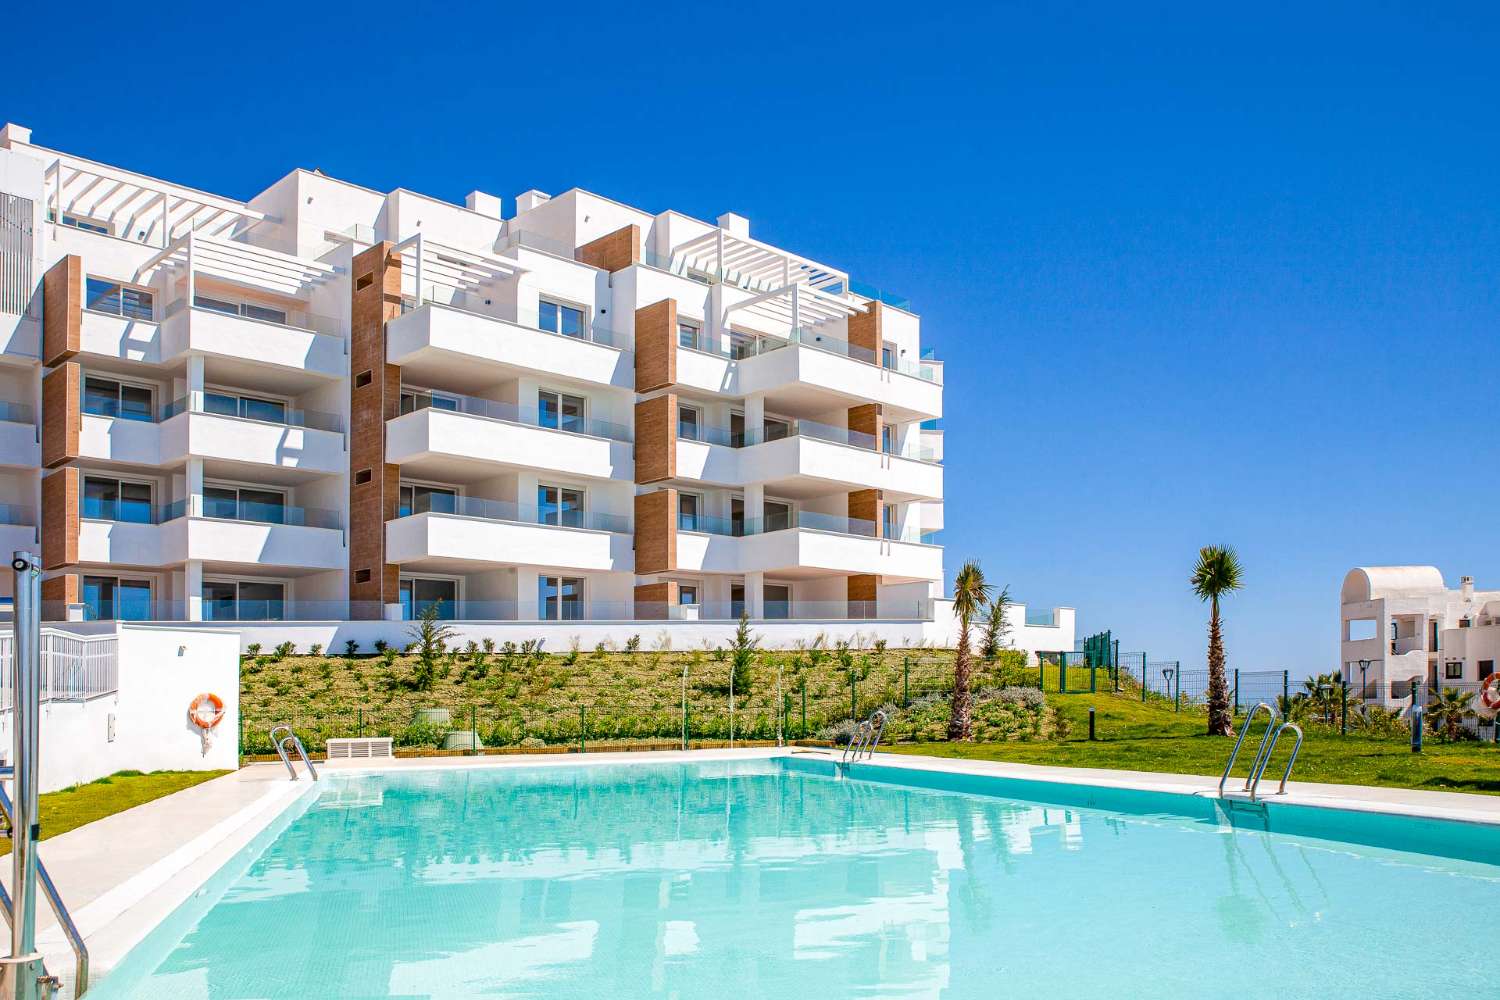 Appartement à vendre sur la côte torrox avec vue magnifique sur la mer, garage et piscine commune